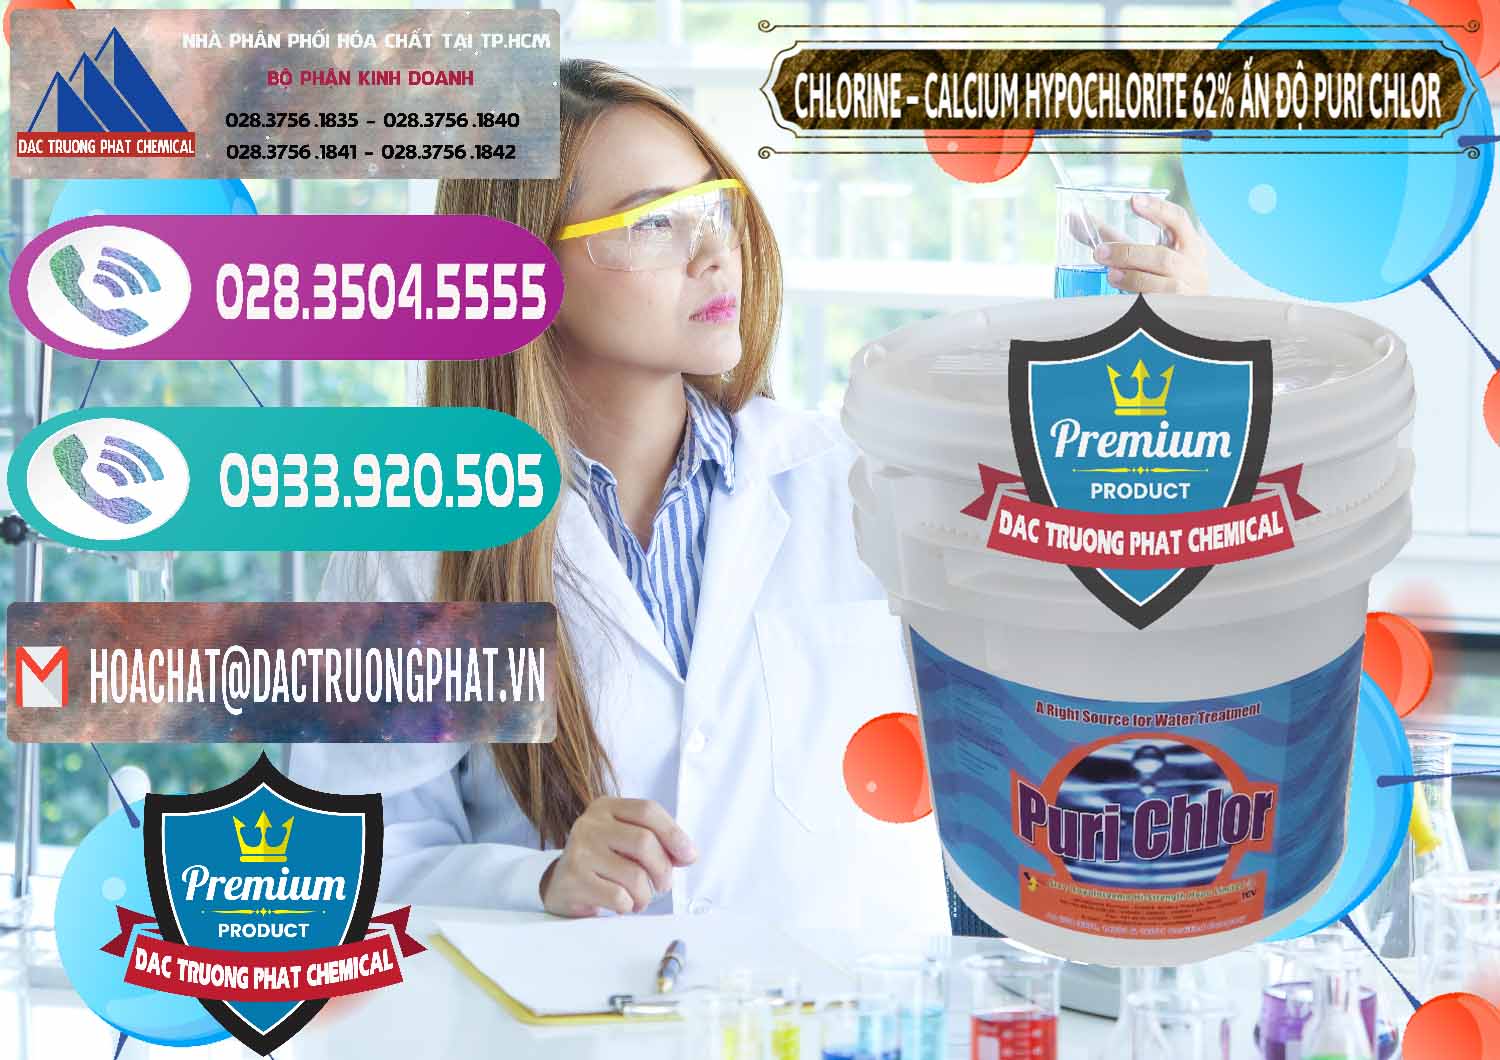 Cty chuyên kinh doanh & bán Chlorine – Clorin 62% Puri Chlo Ấn Độ India - 0052 - Nhà phân phối ( cung cấp ) hóa chất tại TP.HCM - hoachatxulynuoc.com